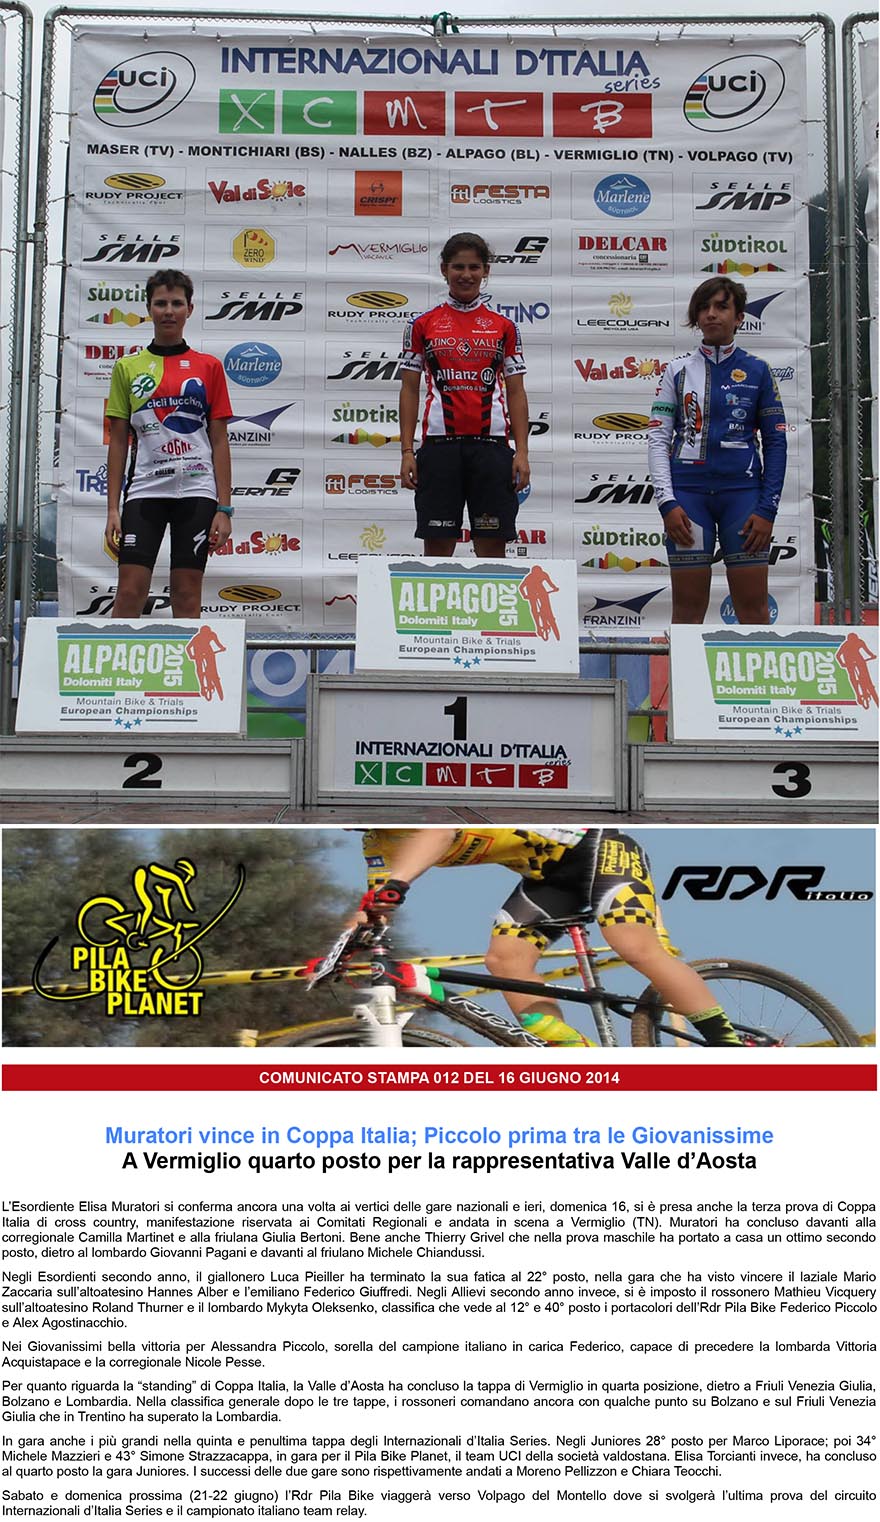 RDR Pila Bike  Muratori vince in Coppa Italia Piccolo prima tra le Giovanissime